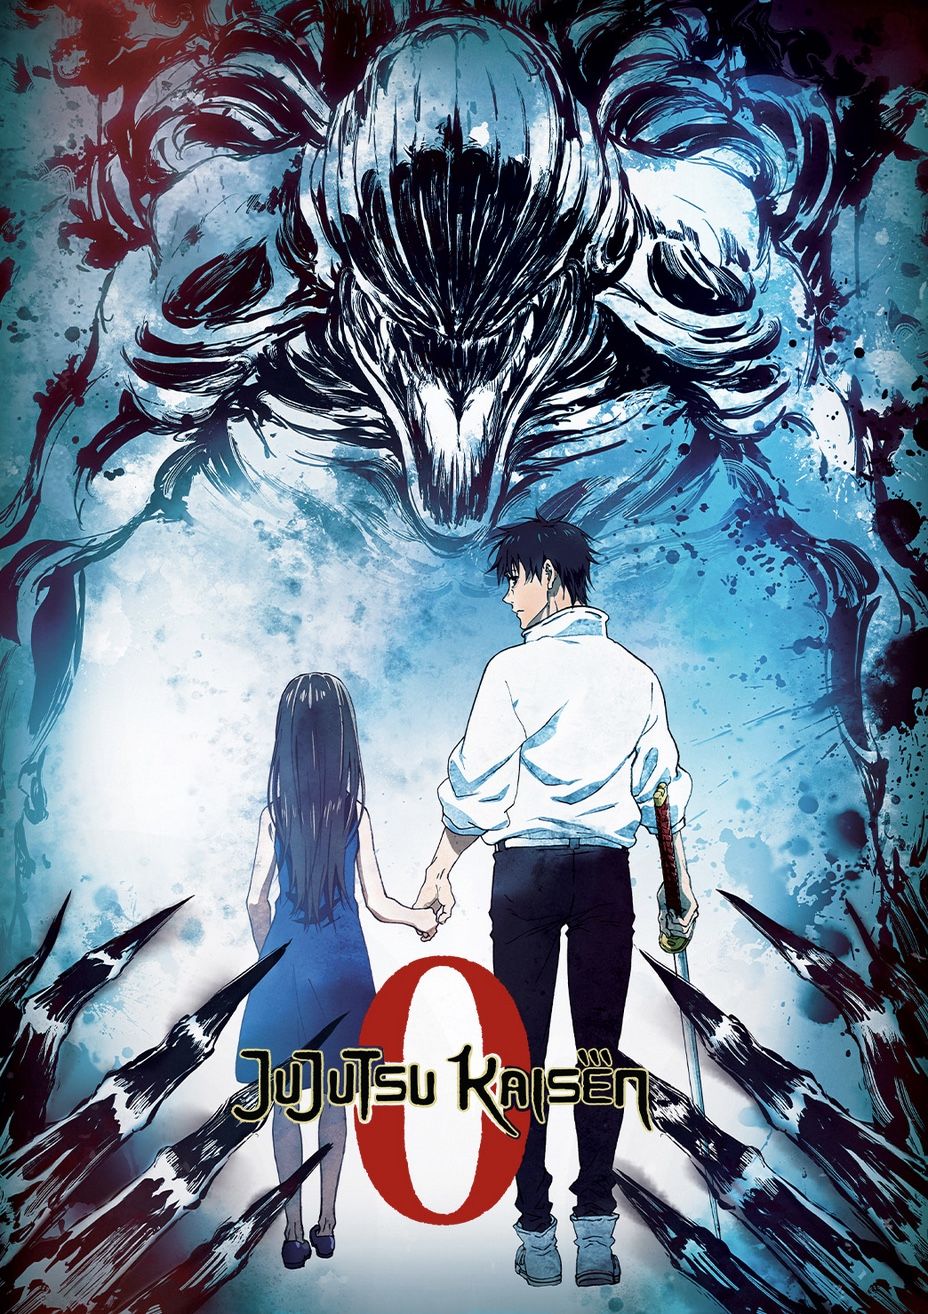 anime manga - Jujutsu Kaisen 0 - Film